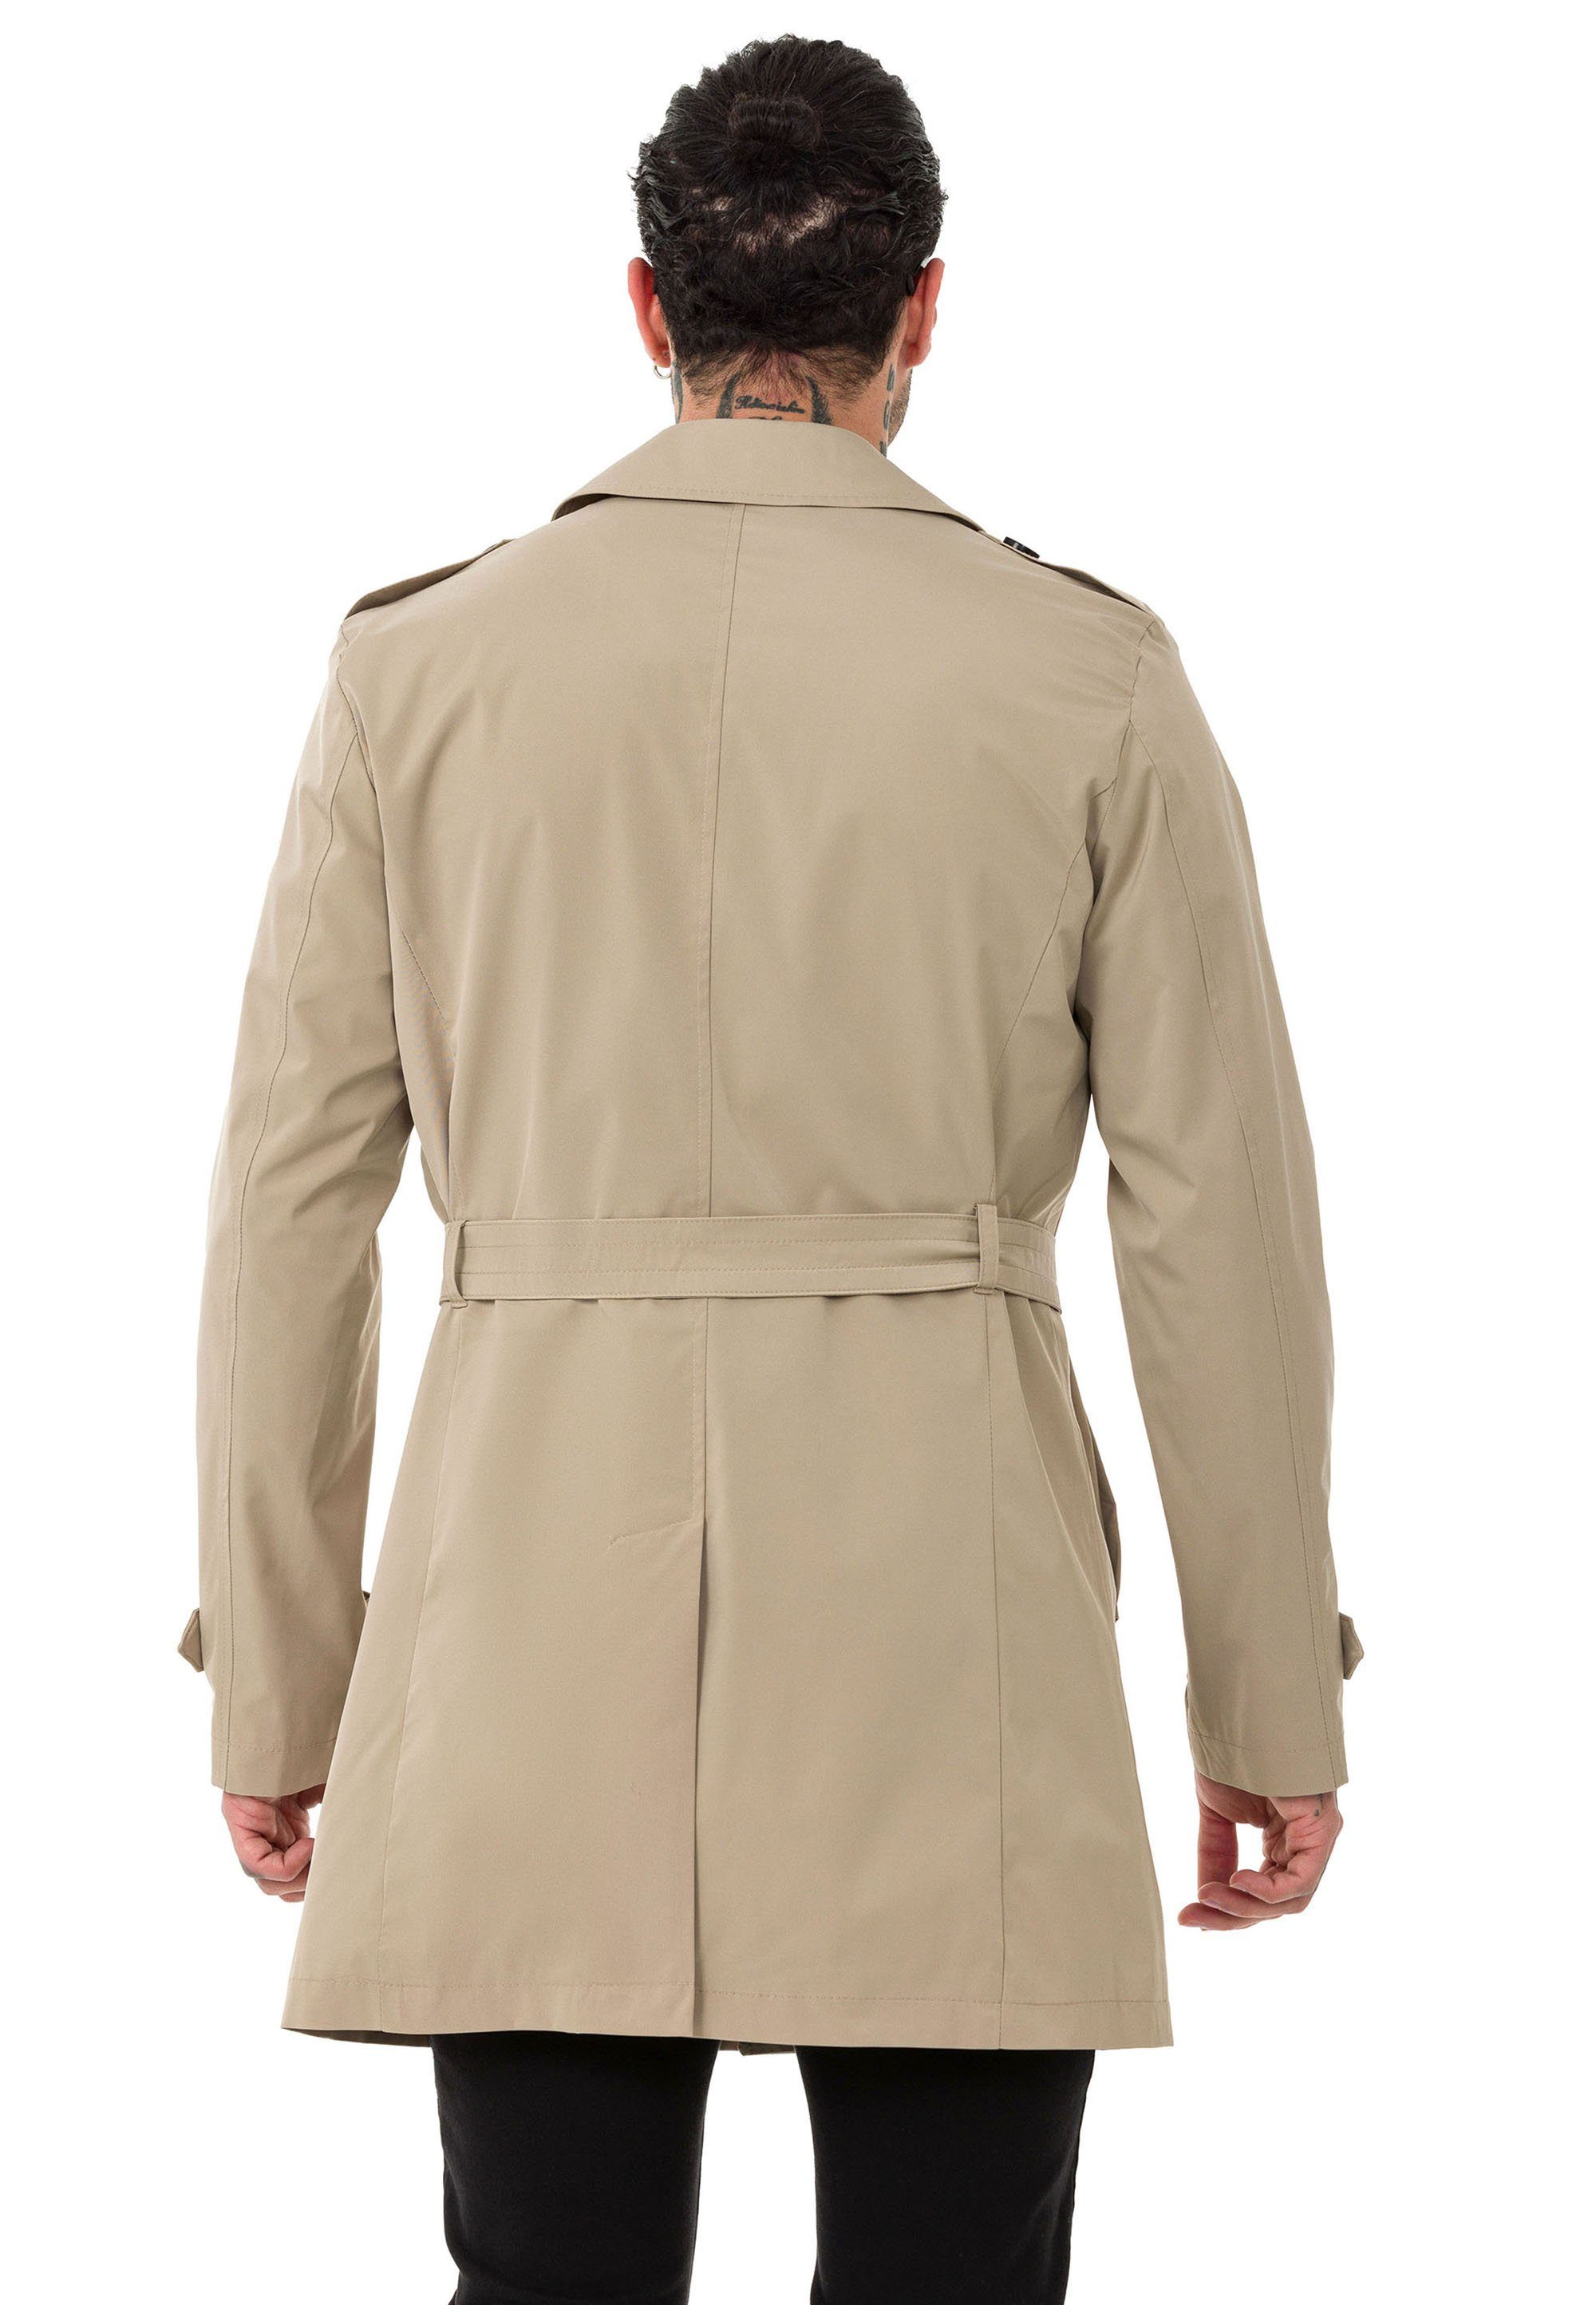 Qualität Mantel Red Beige Trenchcoat Bridge Jacke Premium Trenchcoat Herren RedBridge